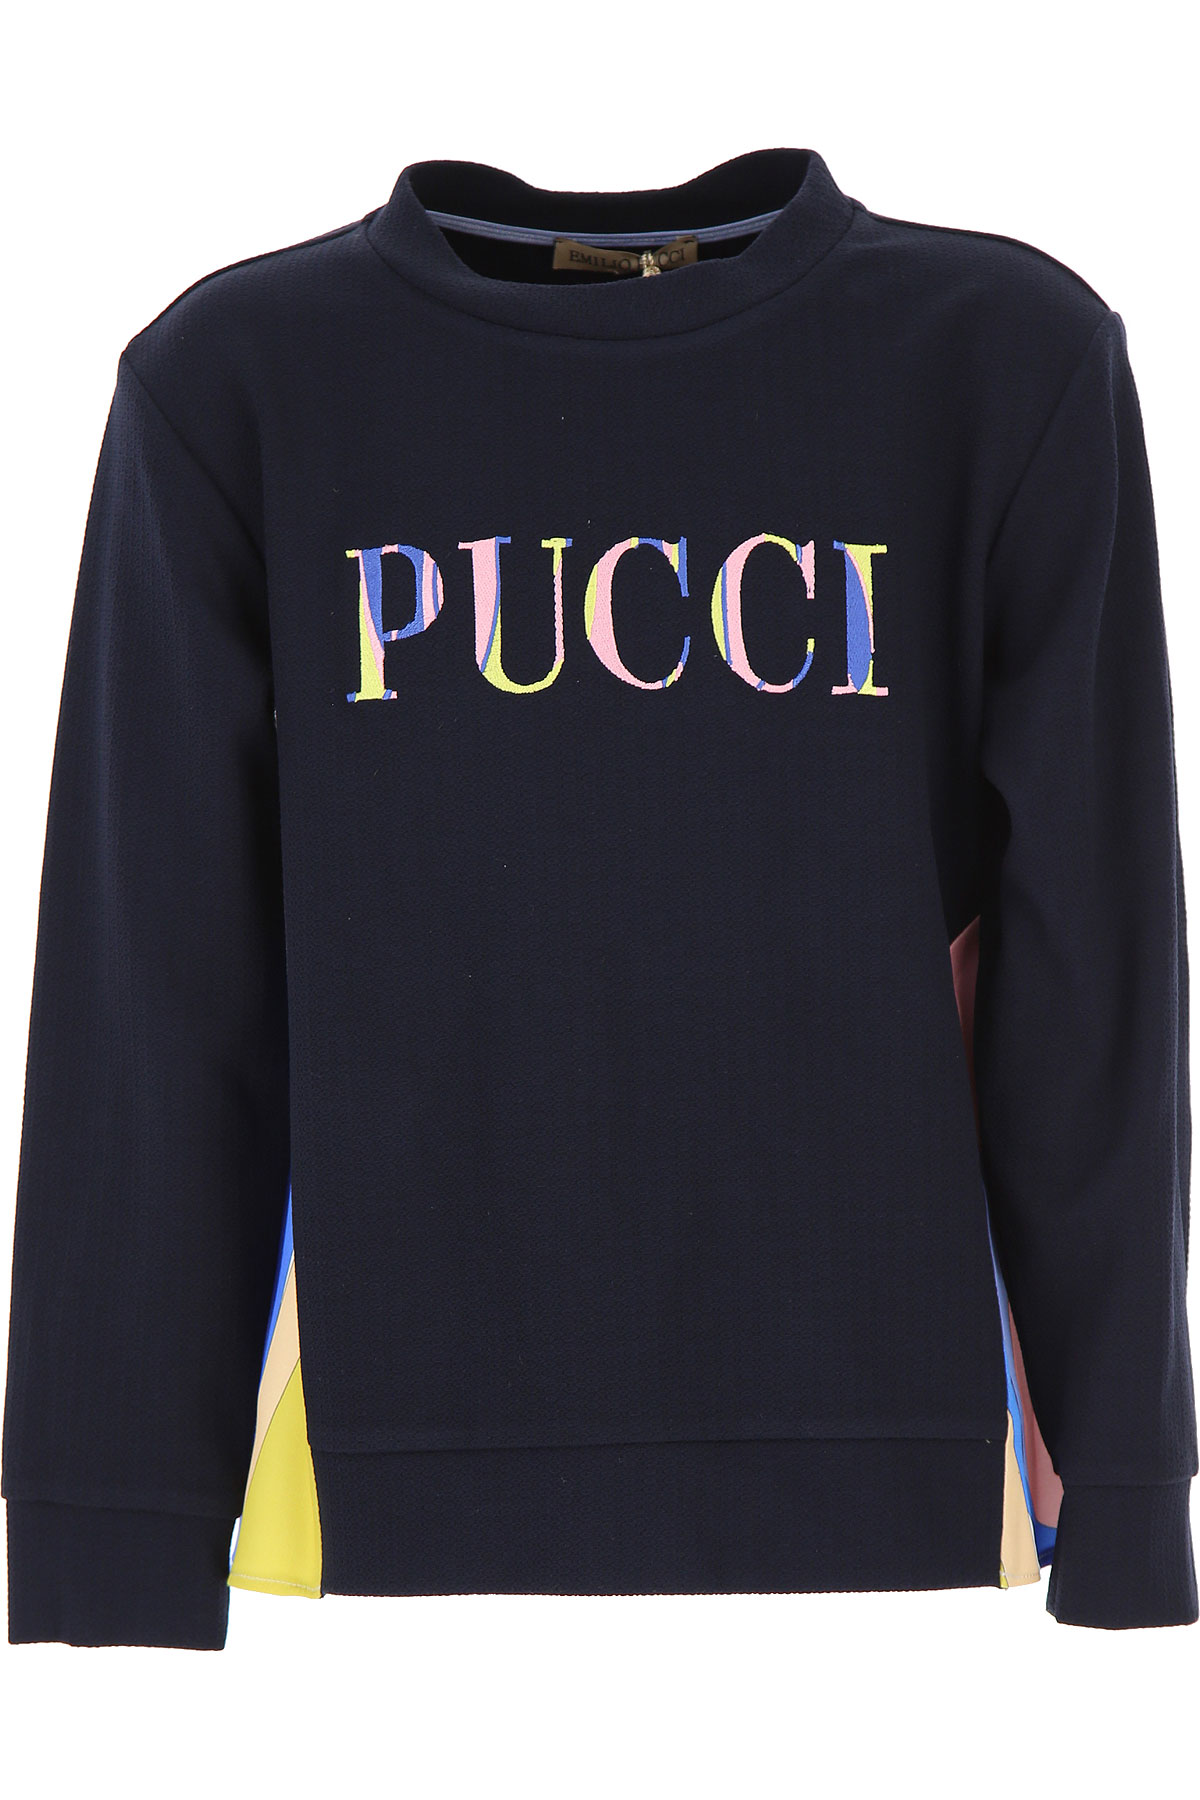 Emilio Pucci Kinder Sweatshirt & Kapuzenpullover für Mädchen Günstig im Sale, Marine blau, Viskose, 2017, 10Y 12Y 14Y